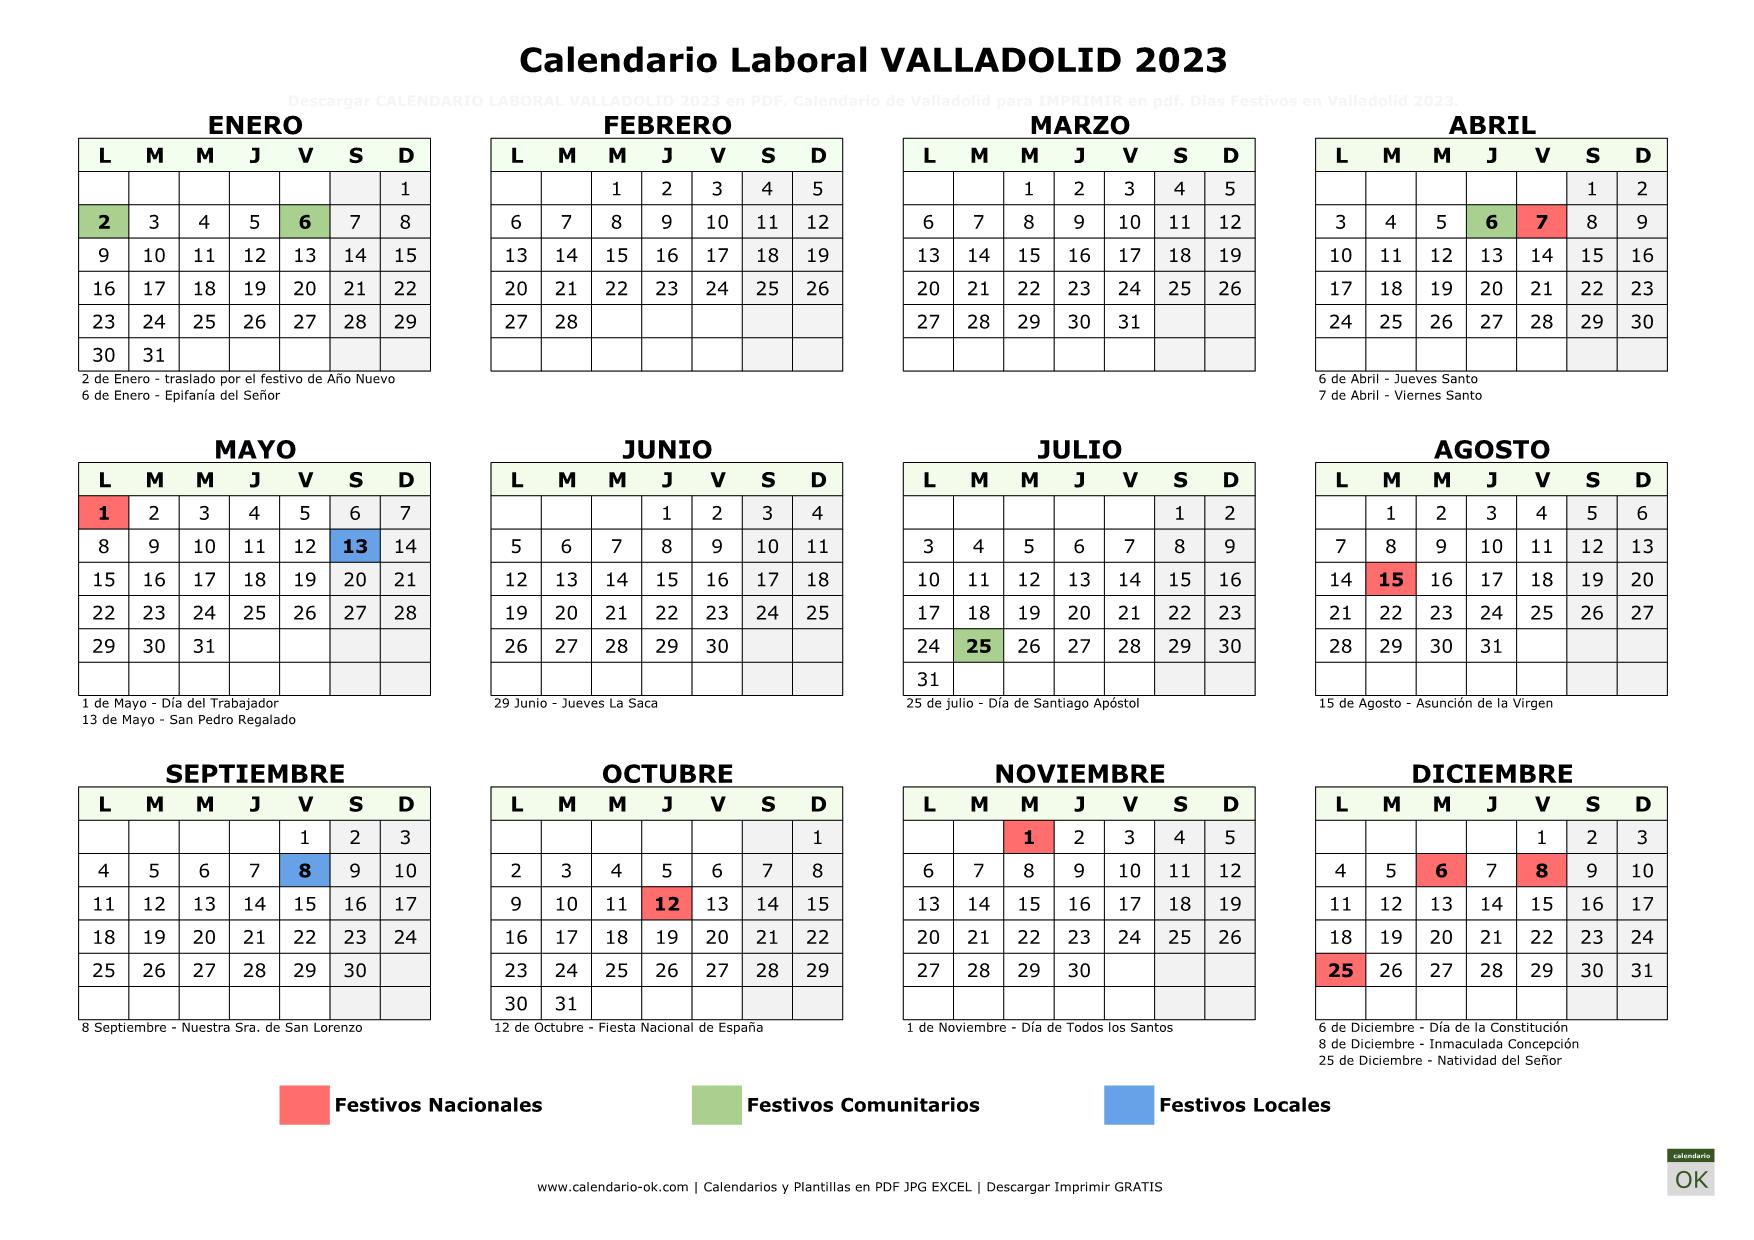 Calendario Laboral Valladolid 2023 horizontal